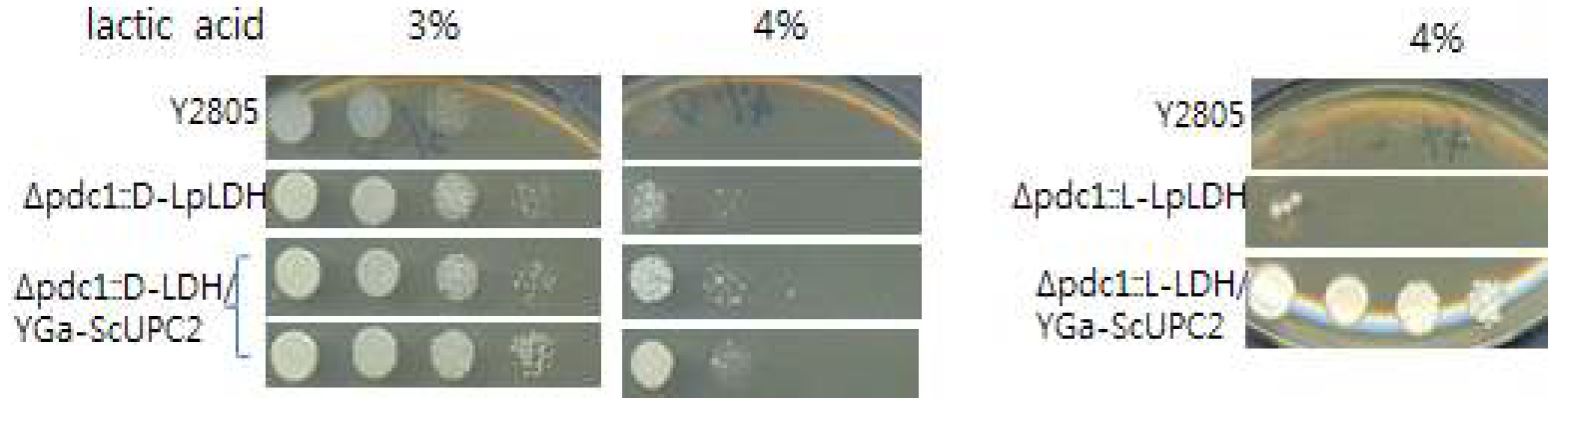 그림 7-46. UPC2 유전자 과발현에 따른 lactic acid 내성 테스트